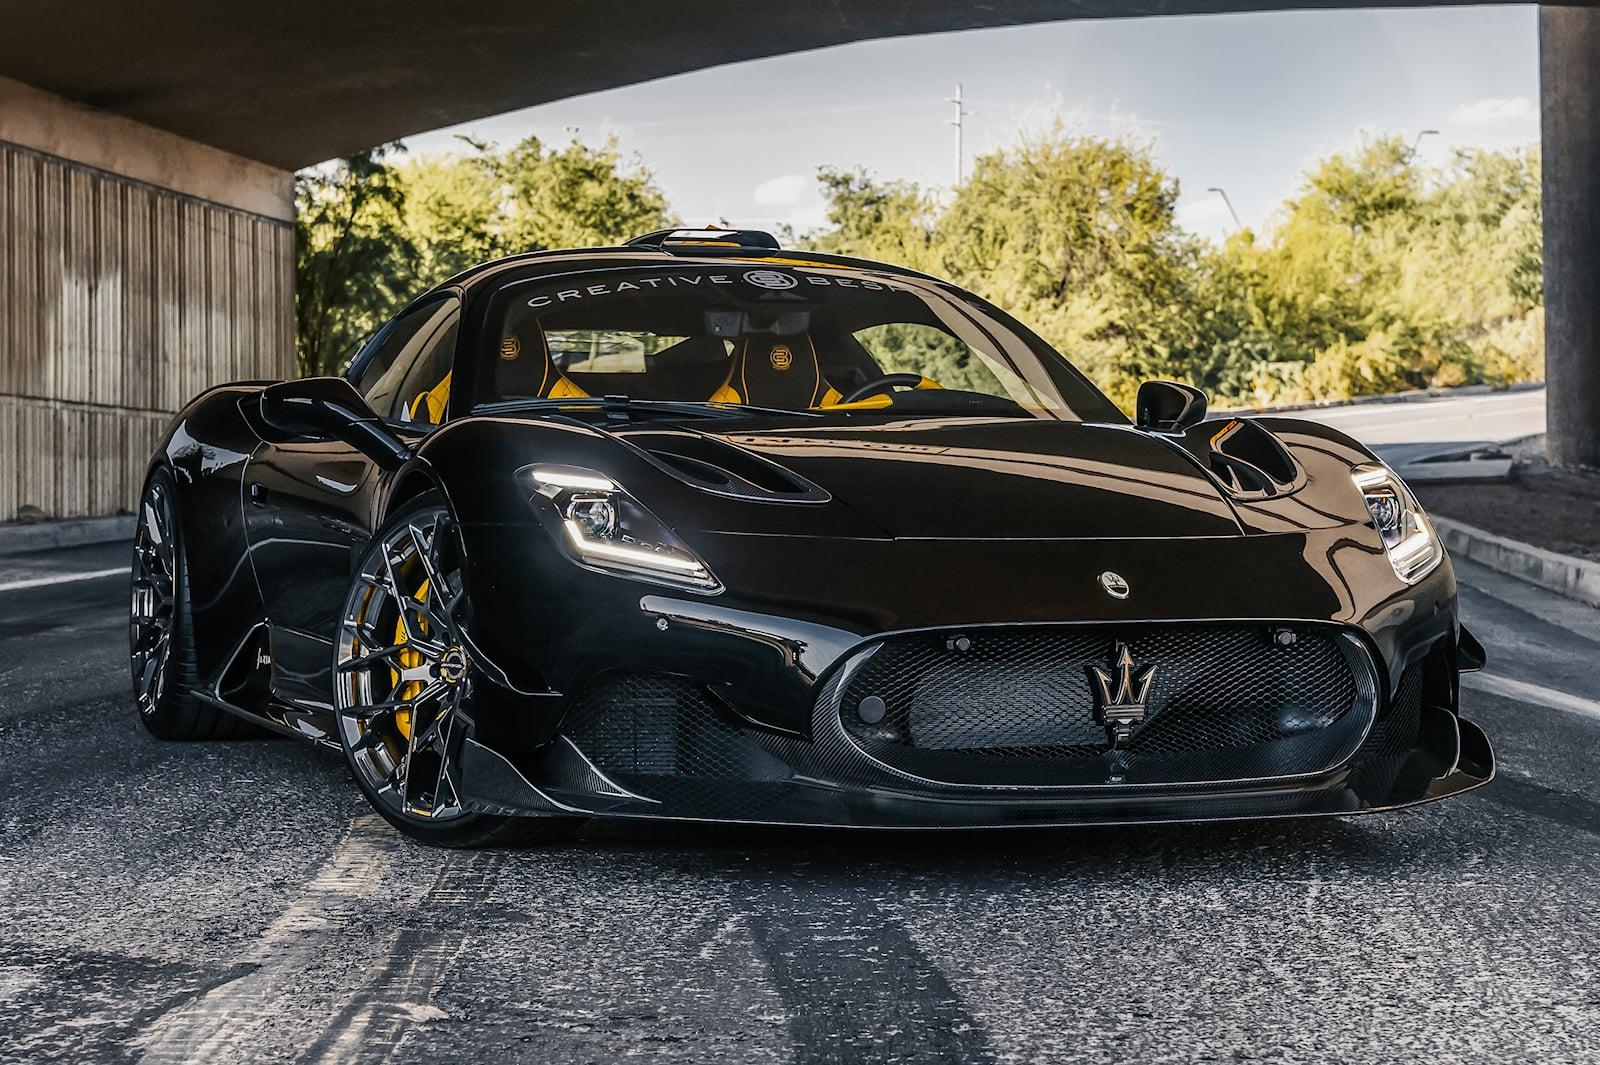 Carbon Fiber Body Kit Gives Maserati Mc20 Batmobile Looks And